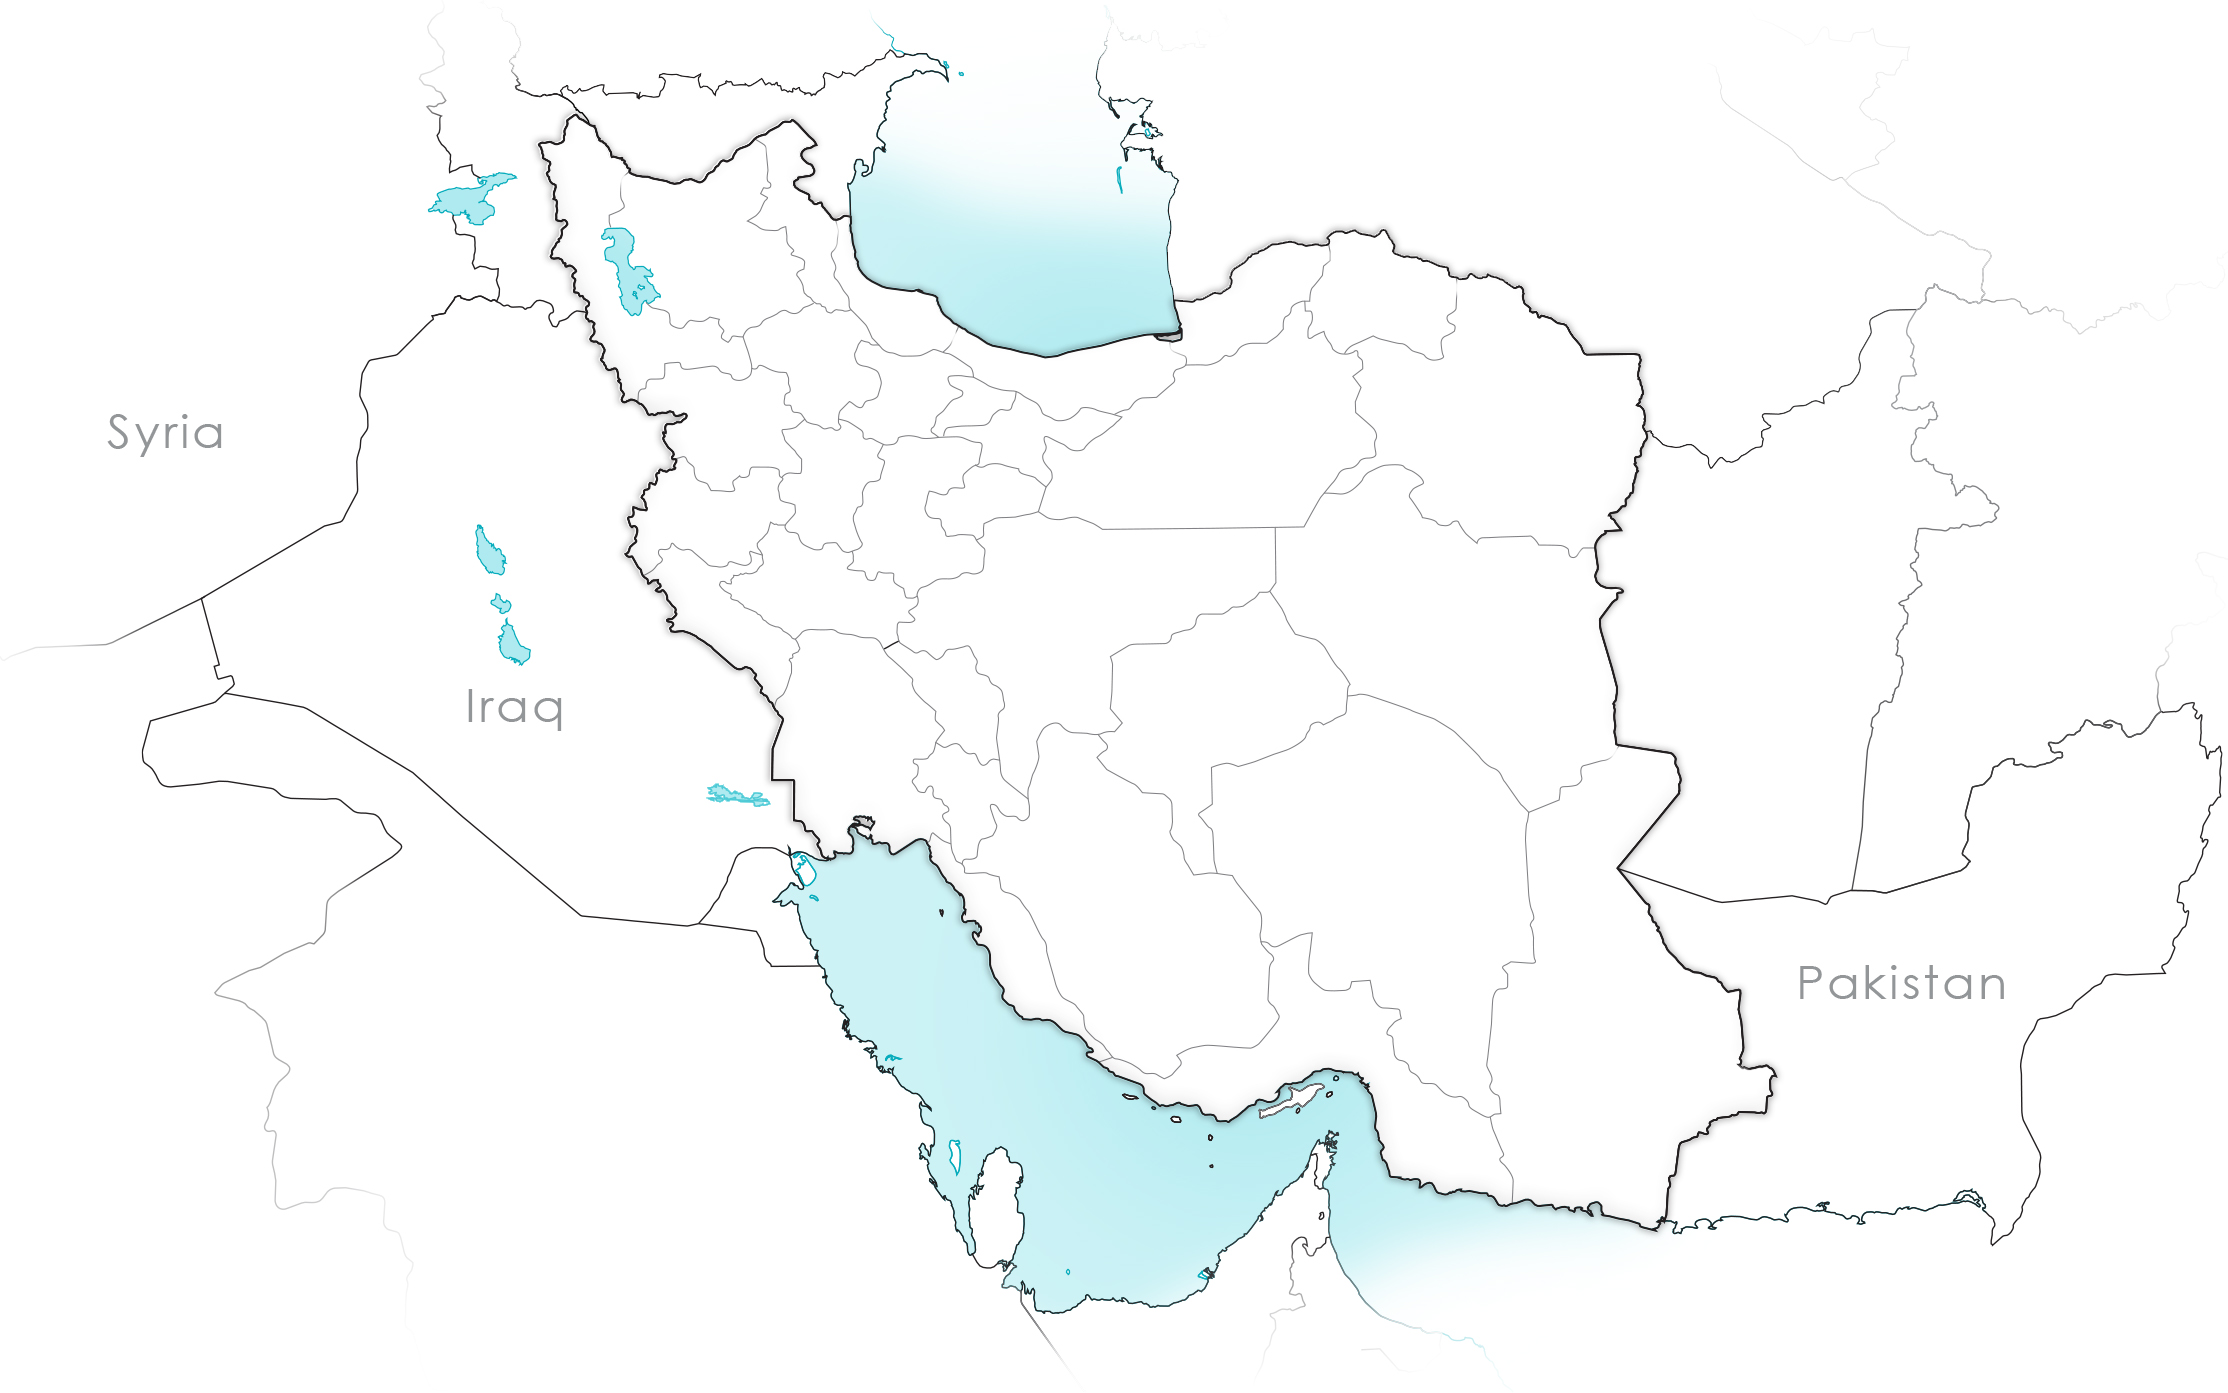 نقشه ایران ، جهان ، دنیا ، شهرها و راههای ایران با کیفیت بسیار بالا و عکس ناسا